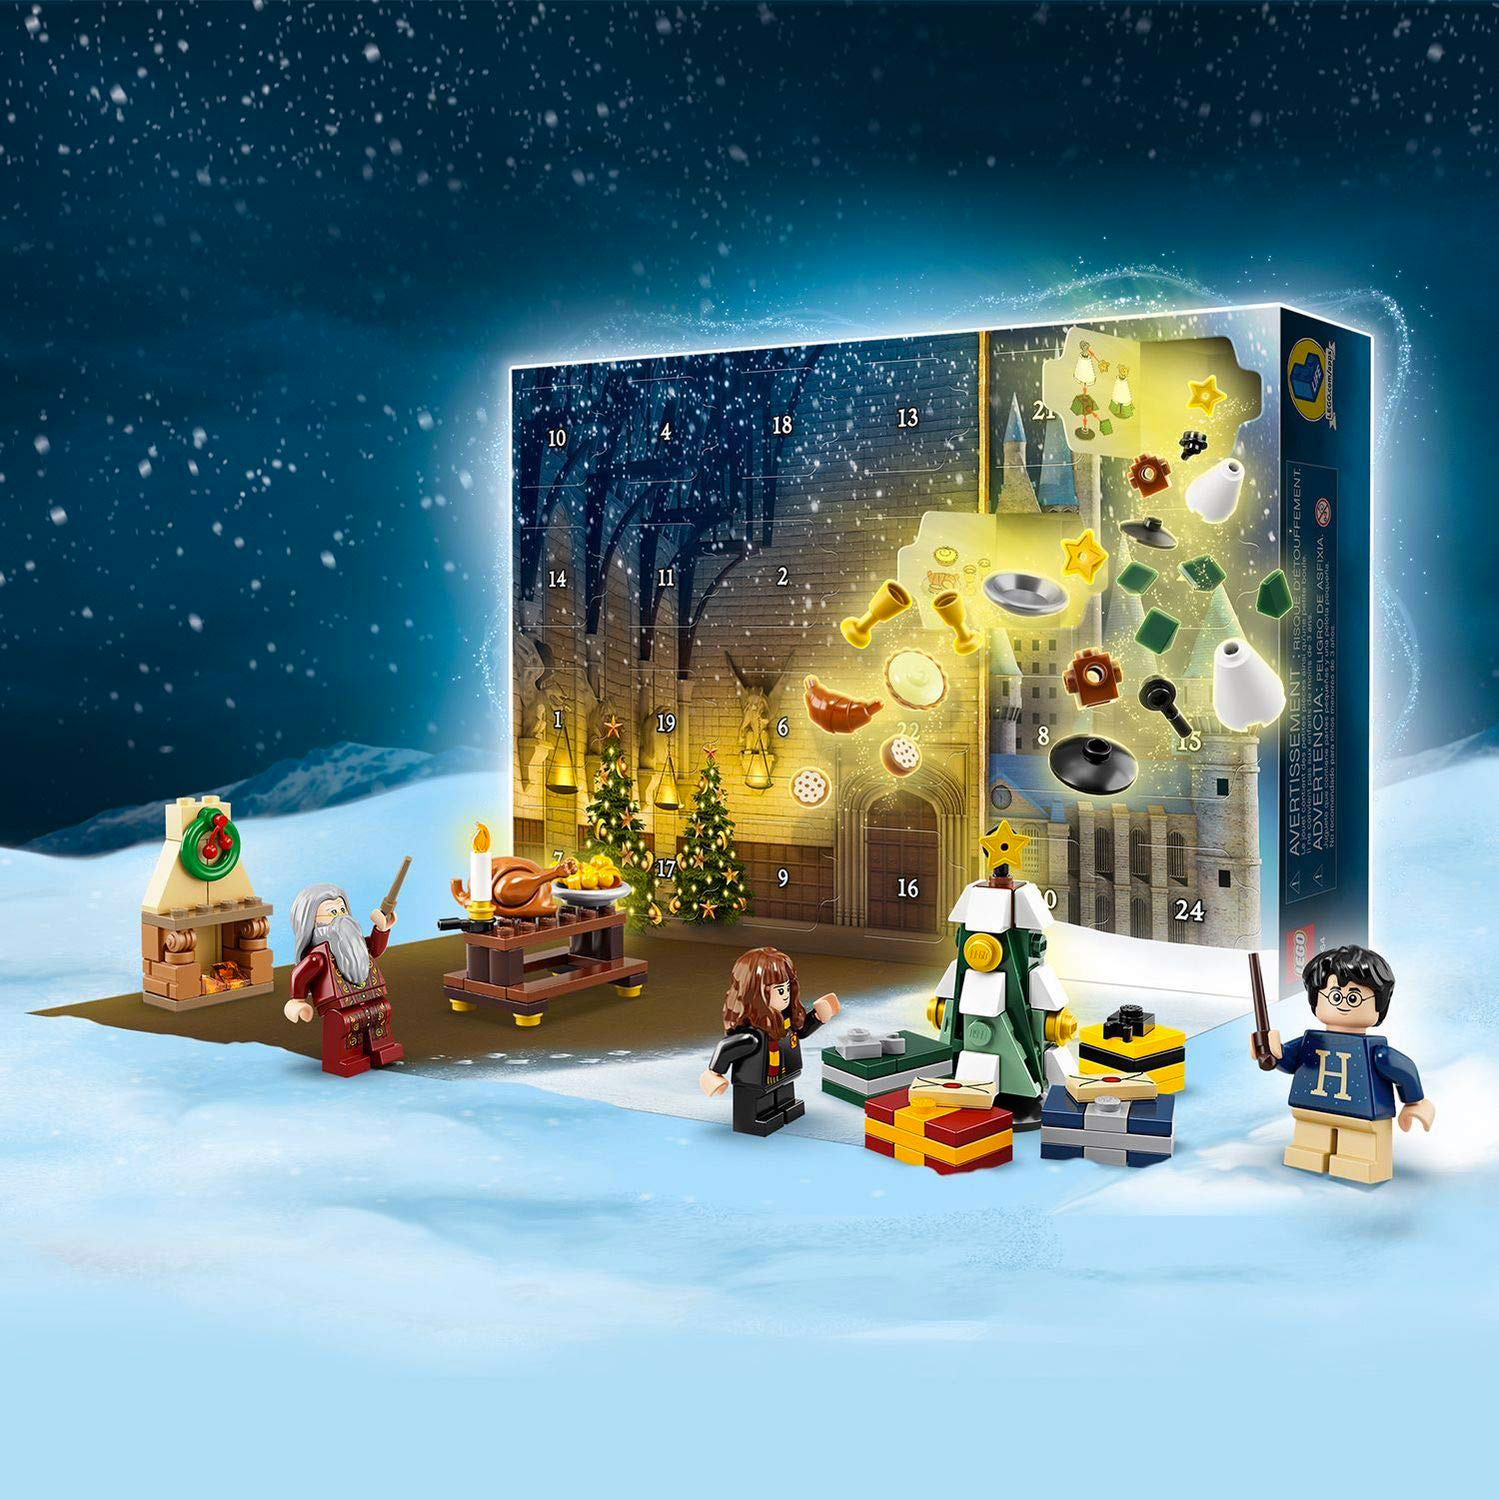 Immagini Natalizie Harry Potter.Harry Potter Pronti A Vivere Un Natale Magico Ecco Il Calendario Dell Avvento Lego Fusco News